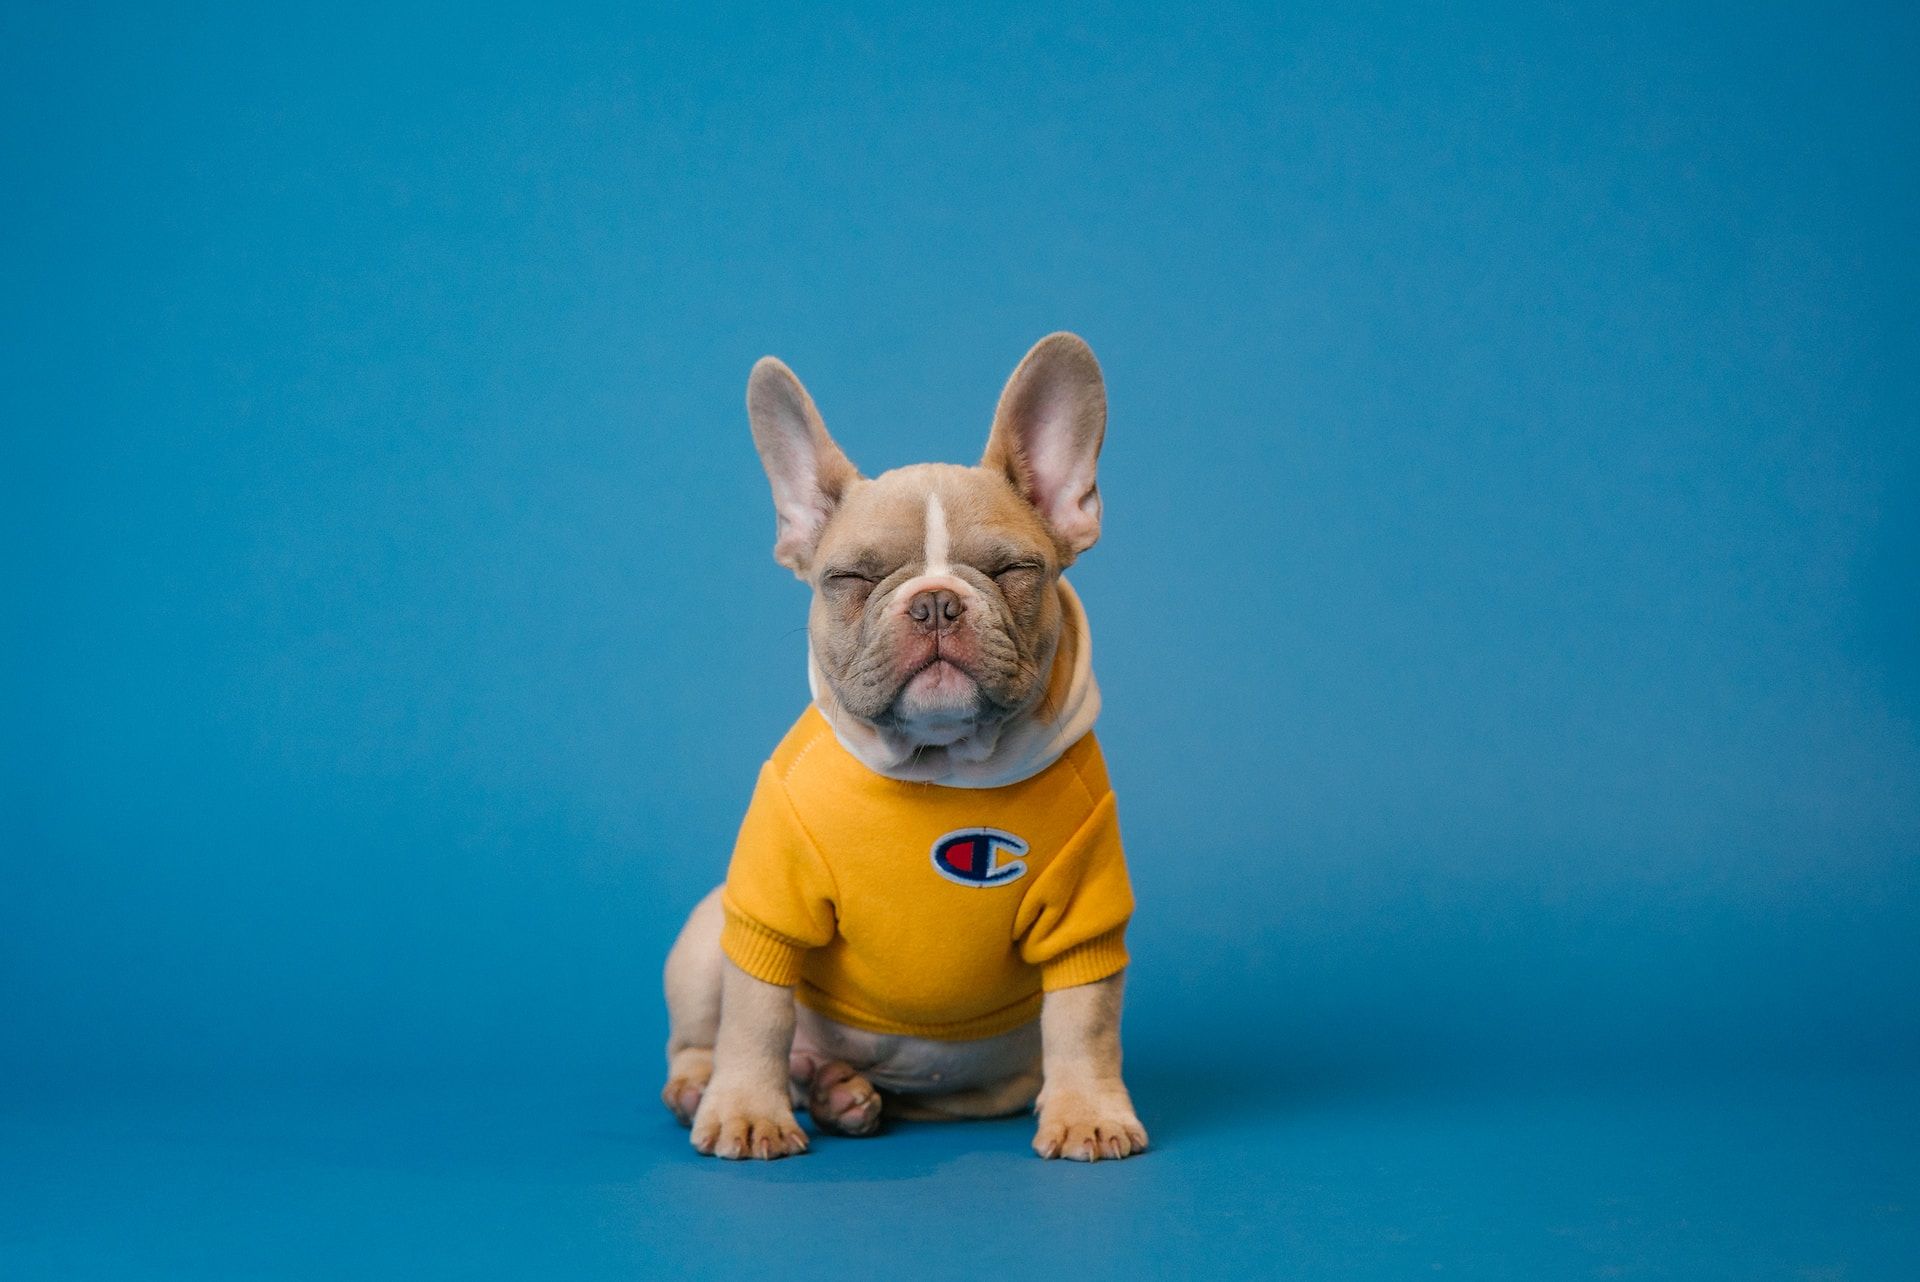 un petit chien portant un vêtement jaune - Photo by Karsten Winegeart on https://unsplash.com/fr/photos/bouledogue-francais-brun-portant-une-chemise-jaune-5PVXkqt2s9k